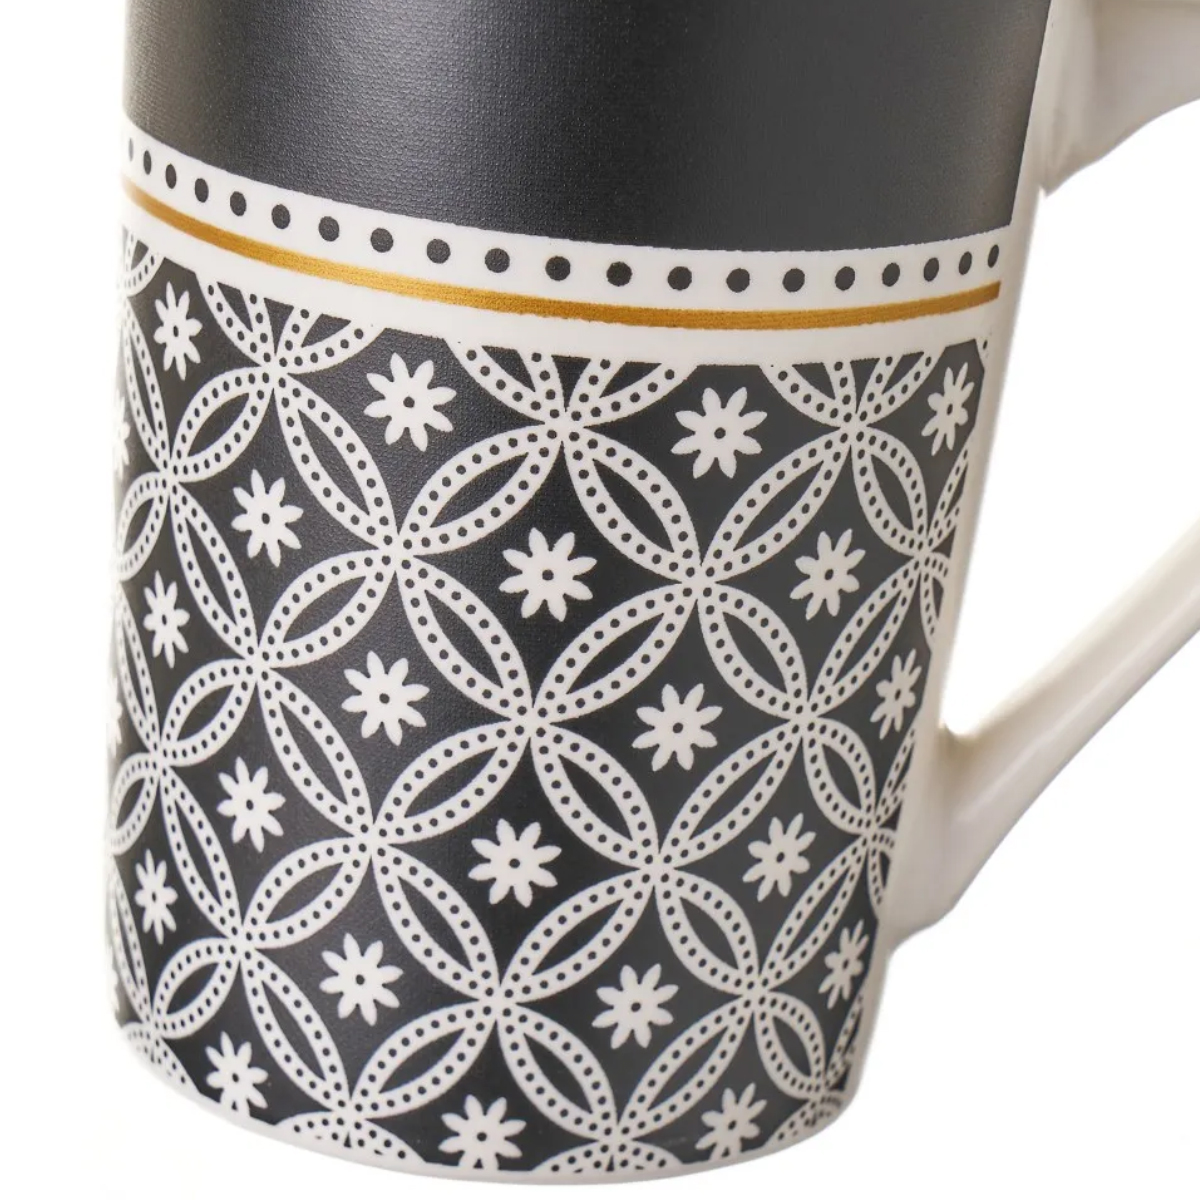 Set de 4 mugs en cramique noirs